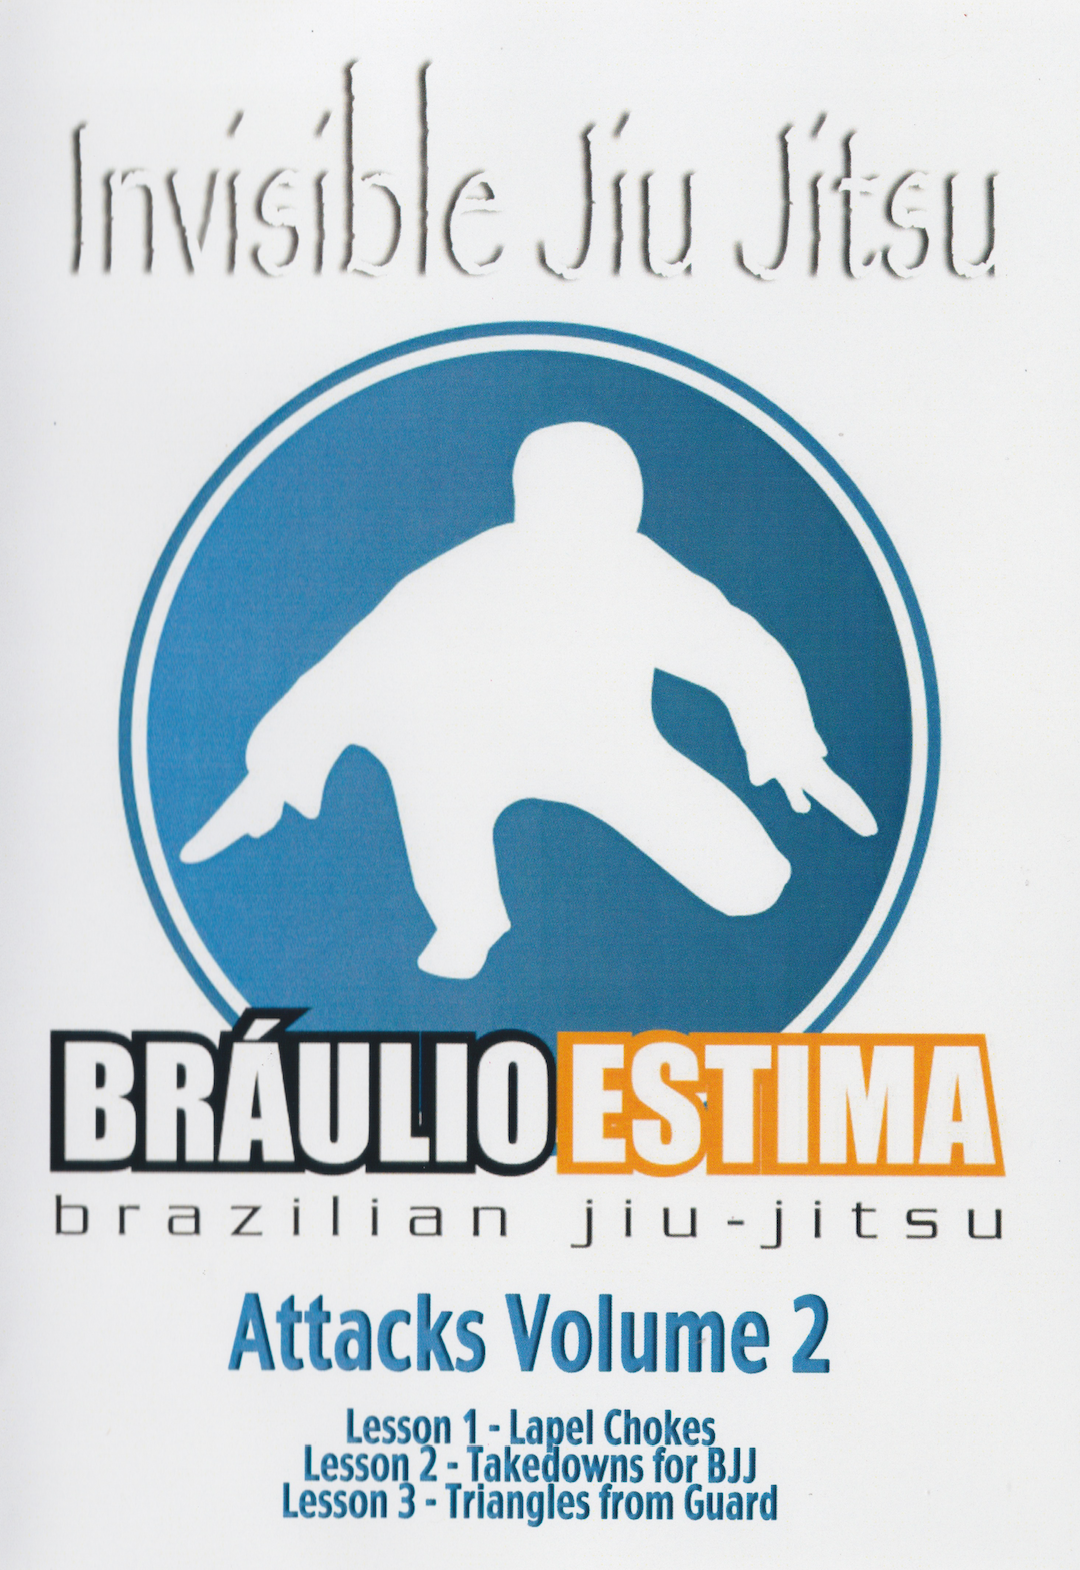 Invisible Jiu Jitsu: Attacks Vol 2 DVD by Braulio Estima (Preowned)